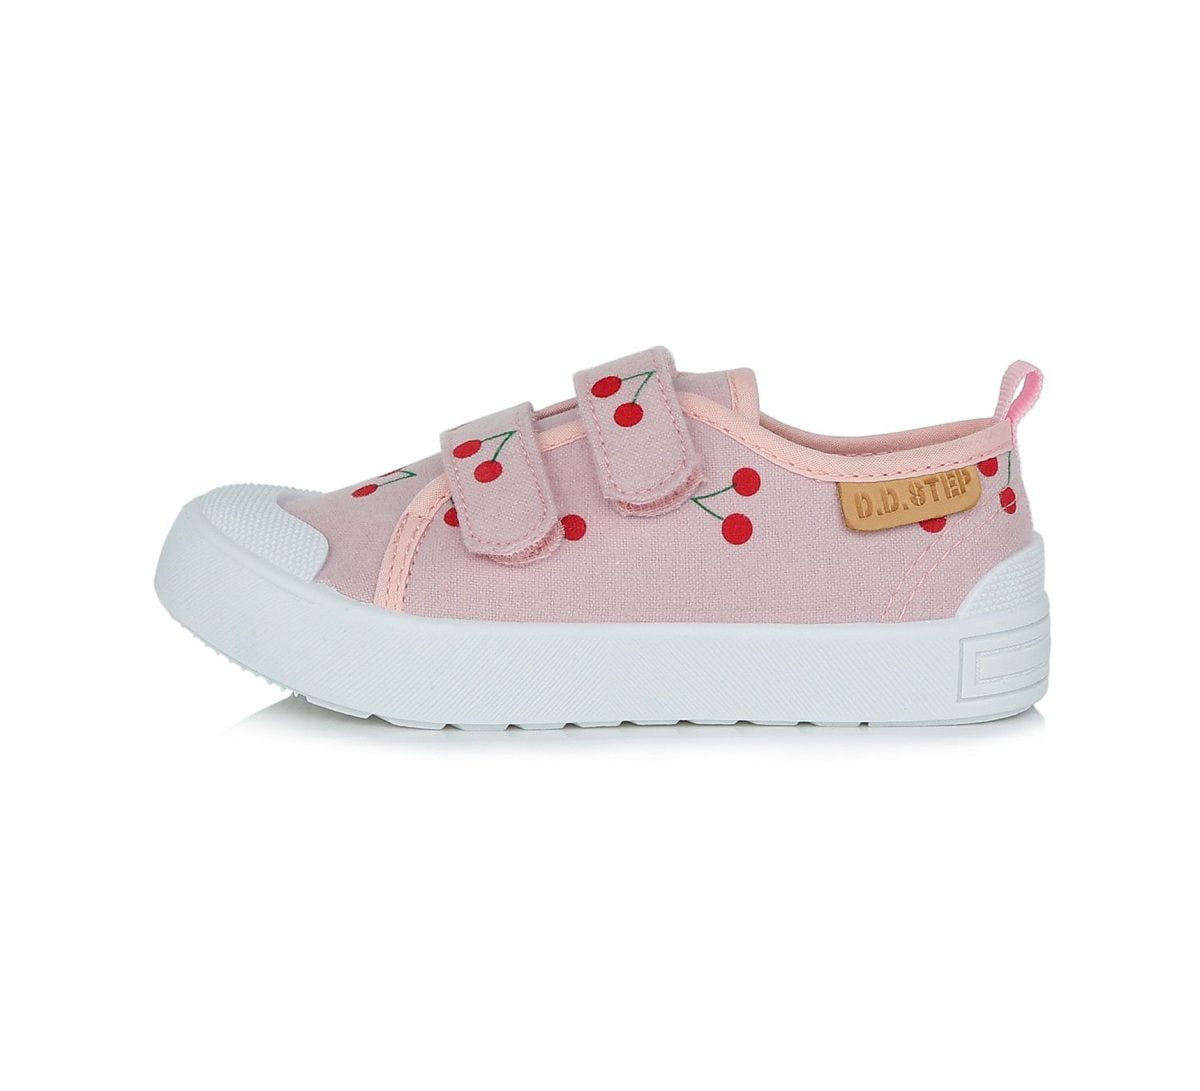 DD STEP Plátenky ružové s čerešňami na suchý zips Shoes cherry pink CSG 369 | Welcomebaby.sk